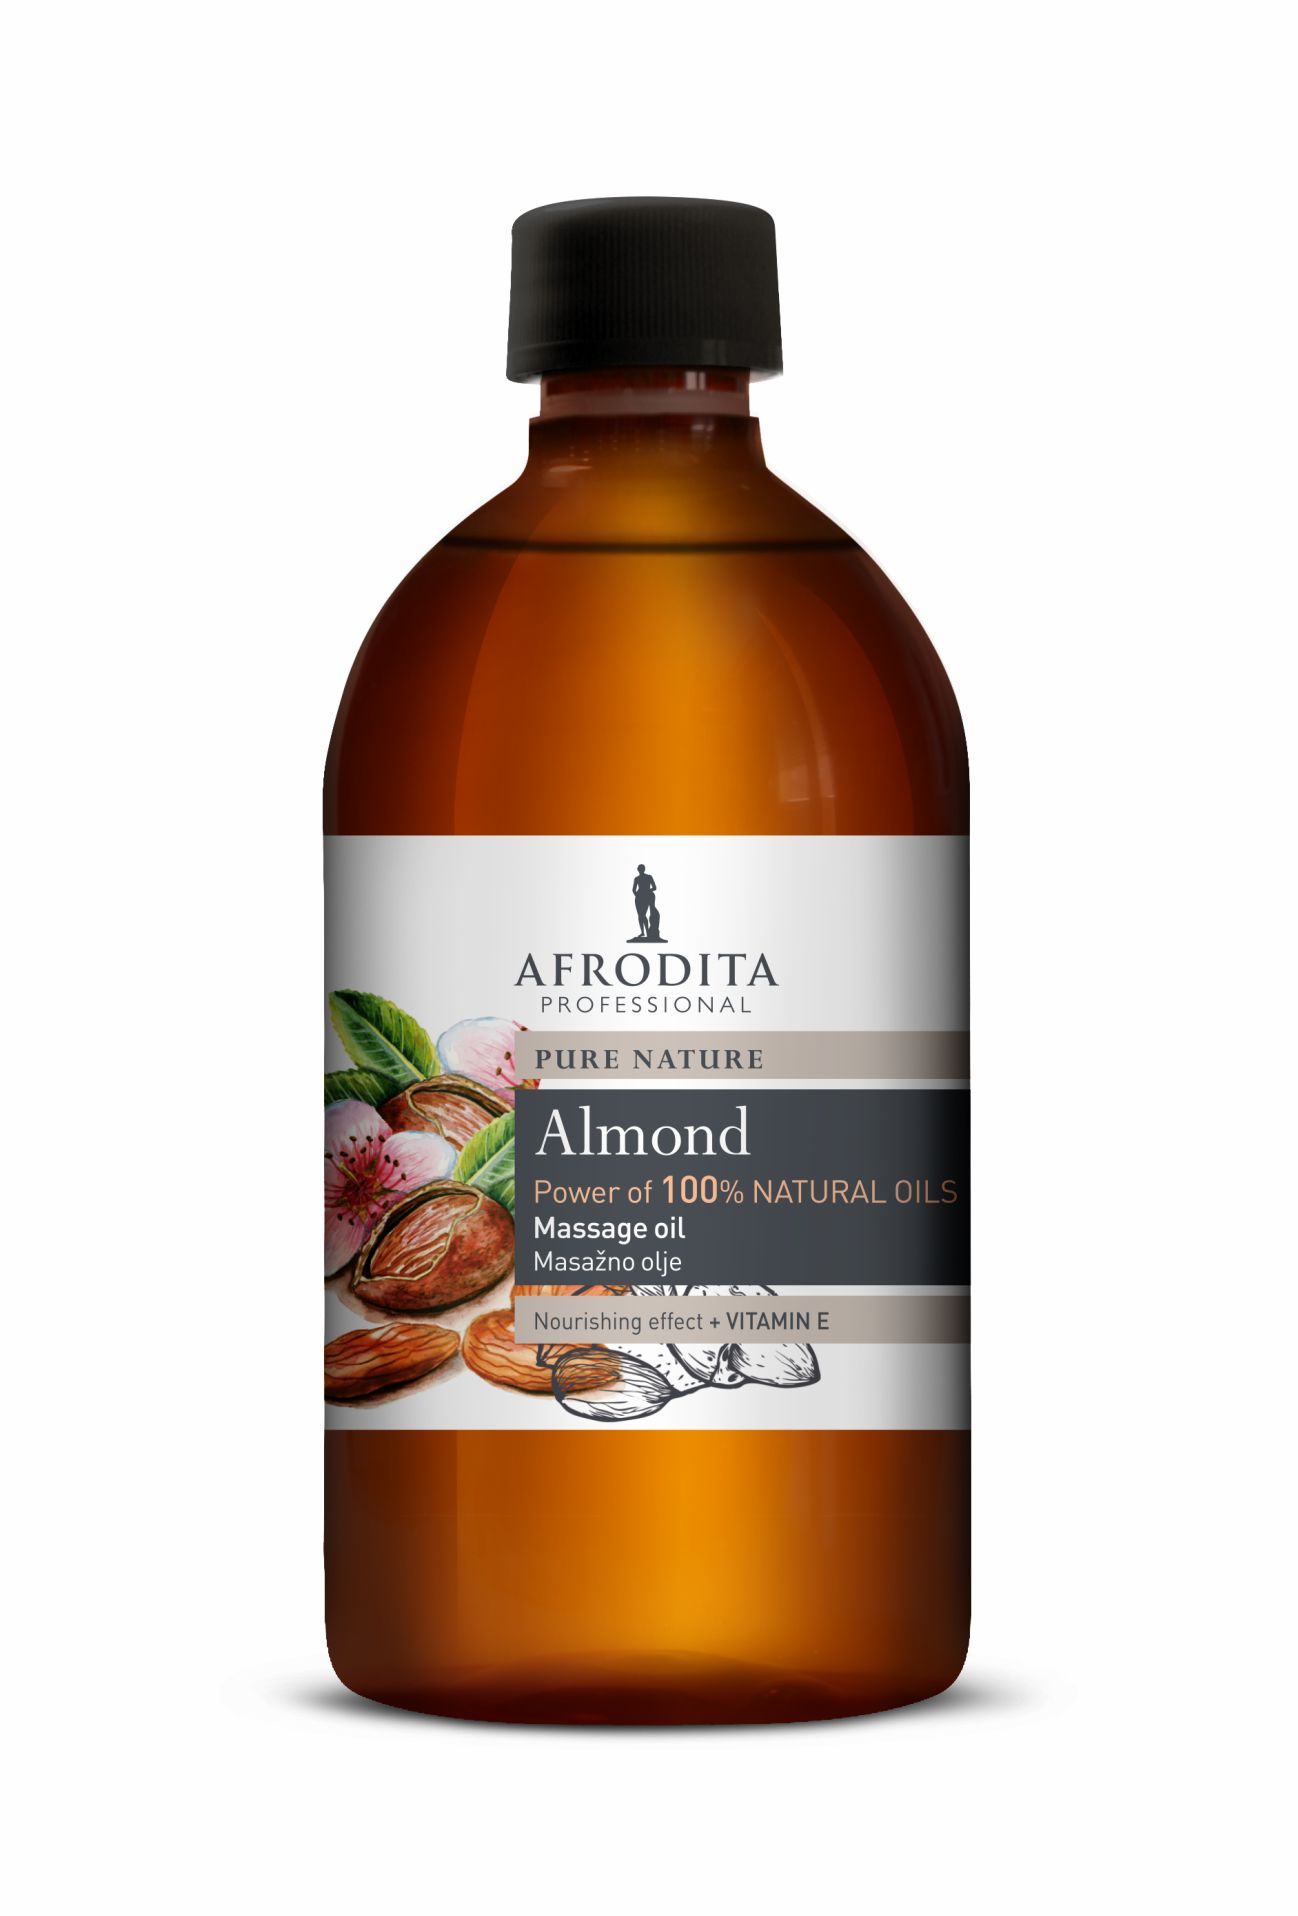 Kozmetika Afrodita - Olej do masażu 500 ml - Migdał